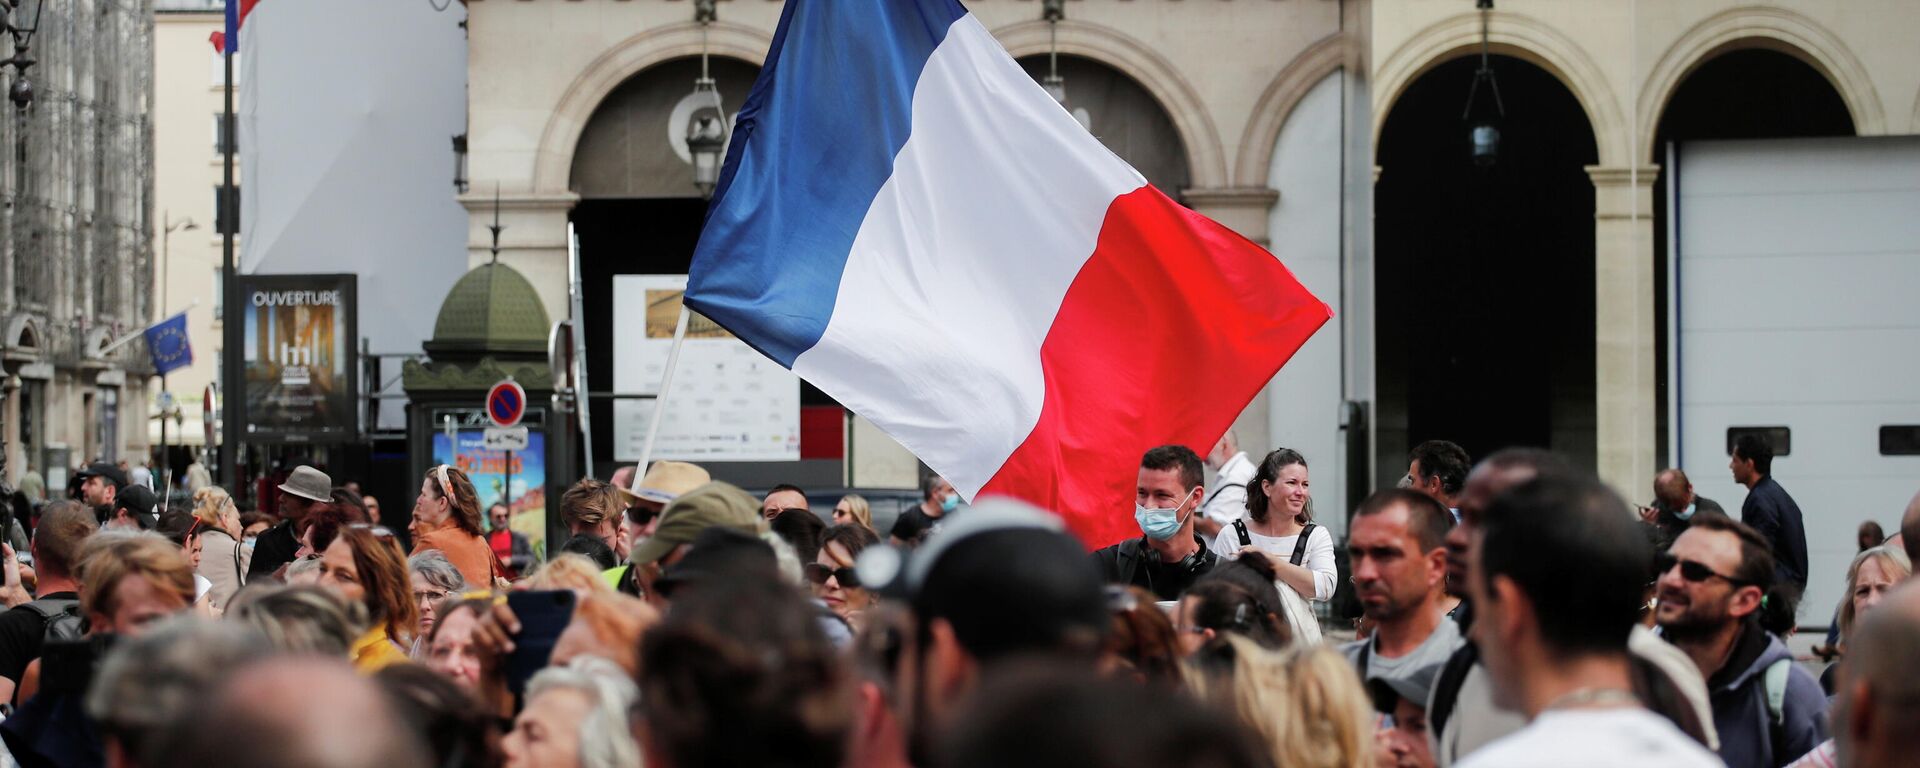 Демонстранти носе заставу Француске на протесту у Паризу - Sputnik Србија, 1920, 14.08.2021